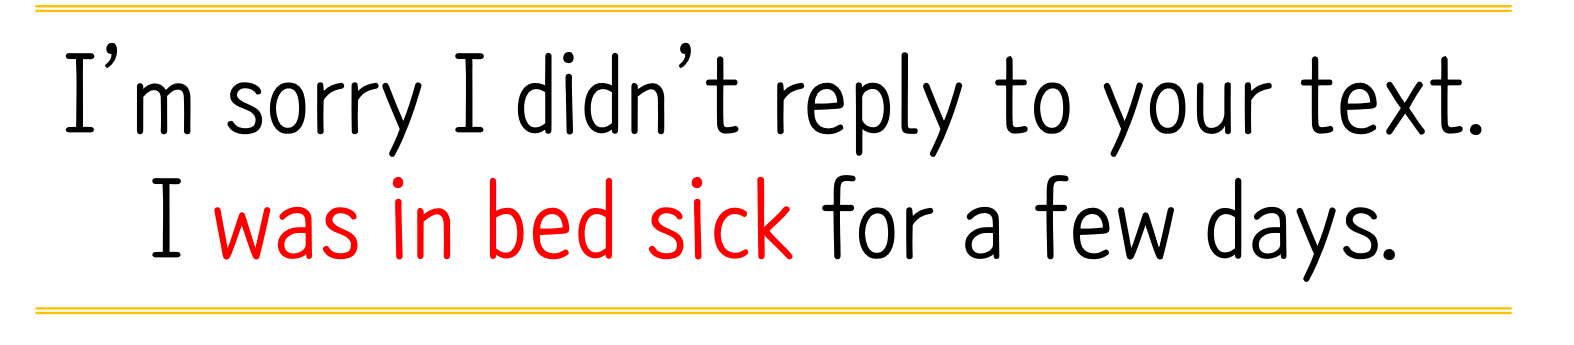 sick(아픈) 예문-03